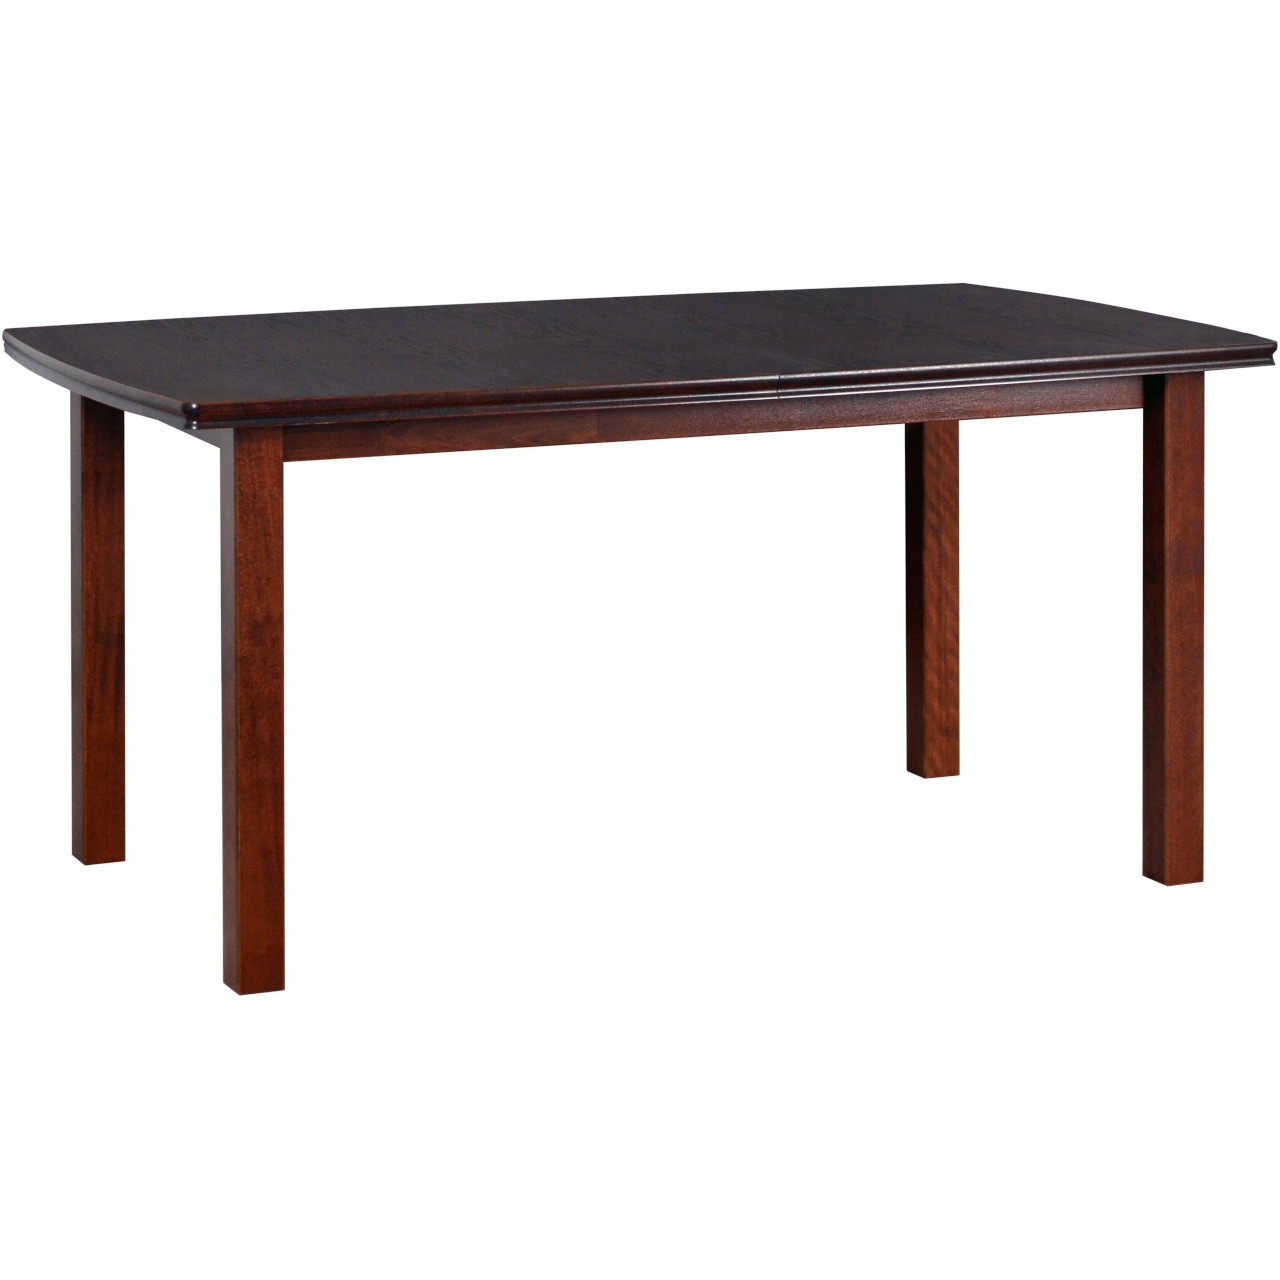 Table KENT 2 90x160/200 walnut oak veneer